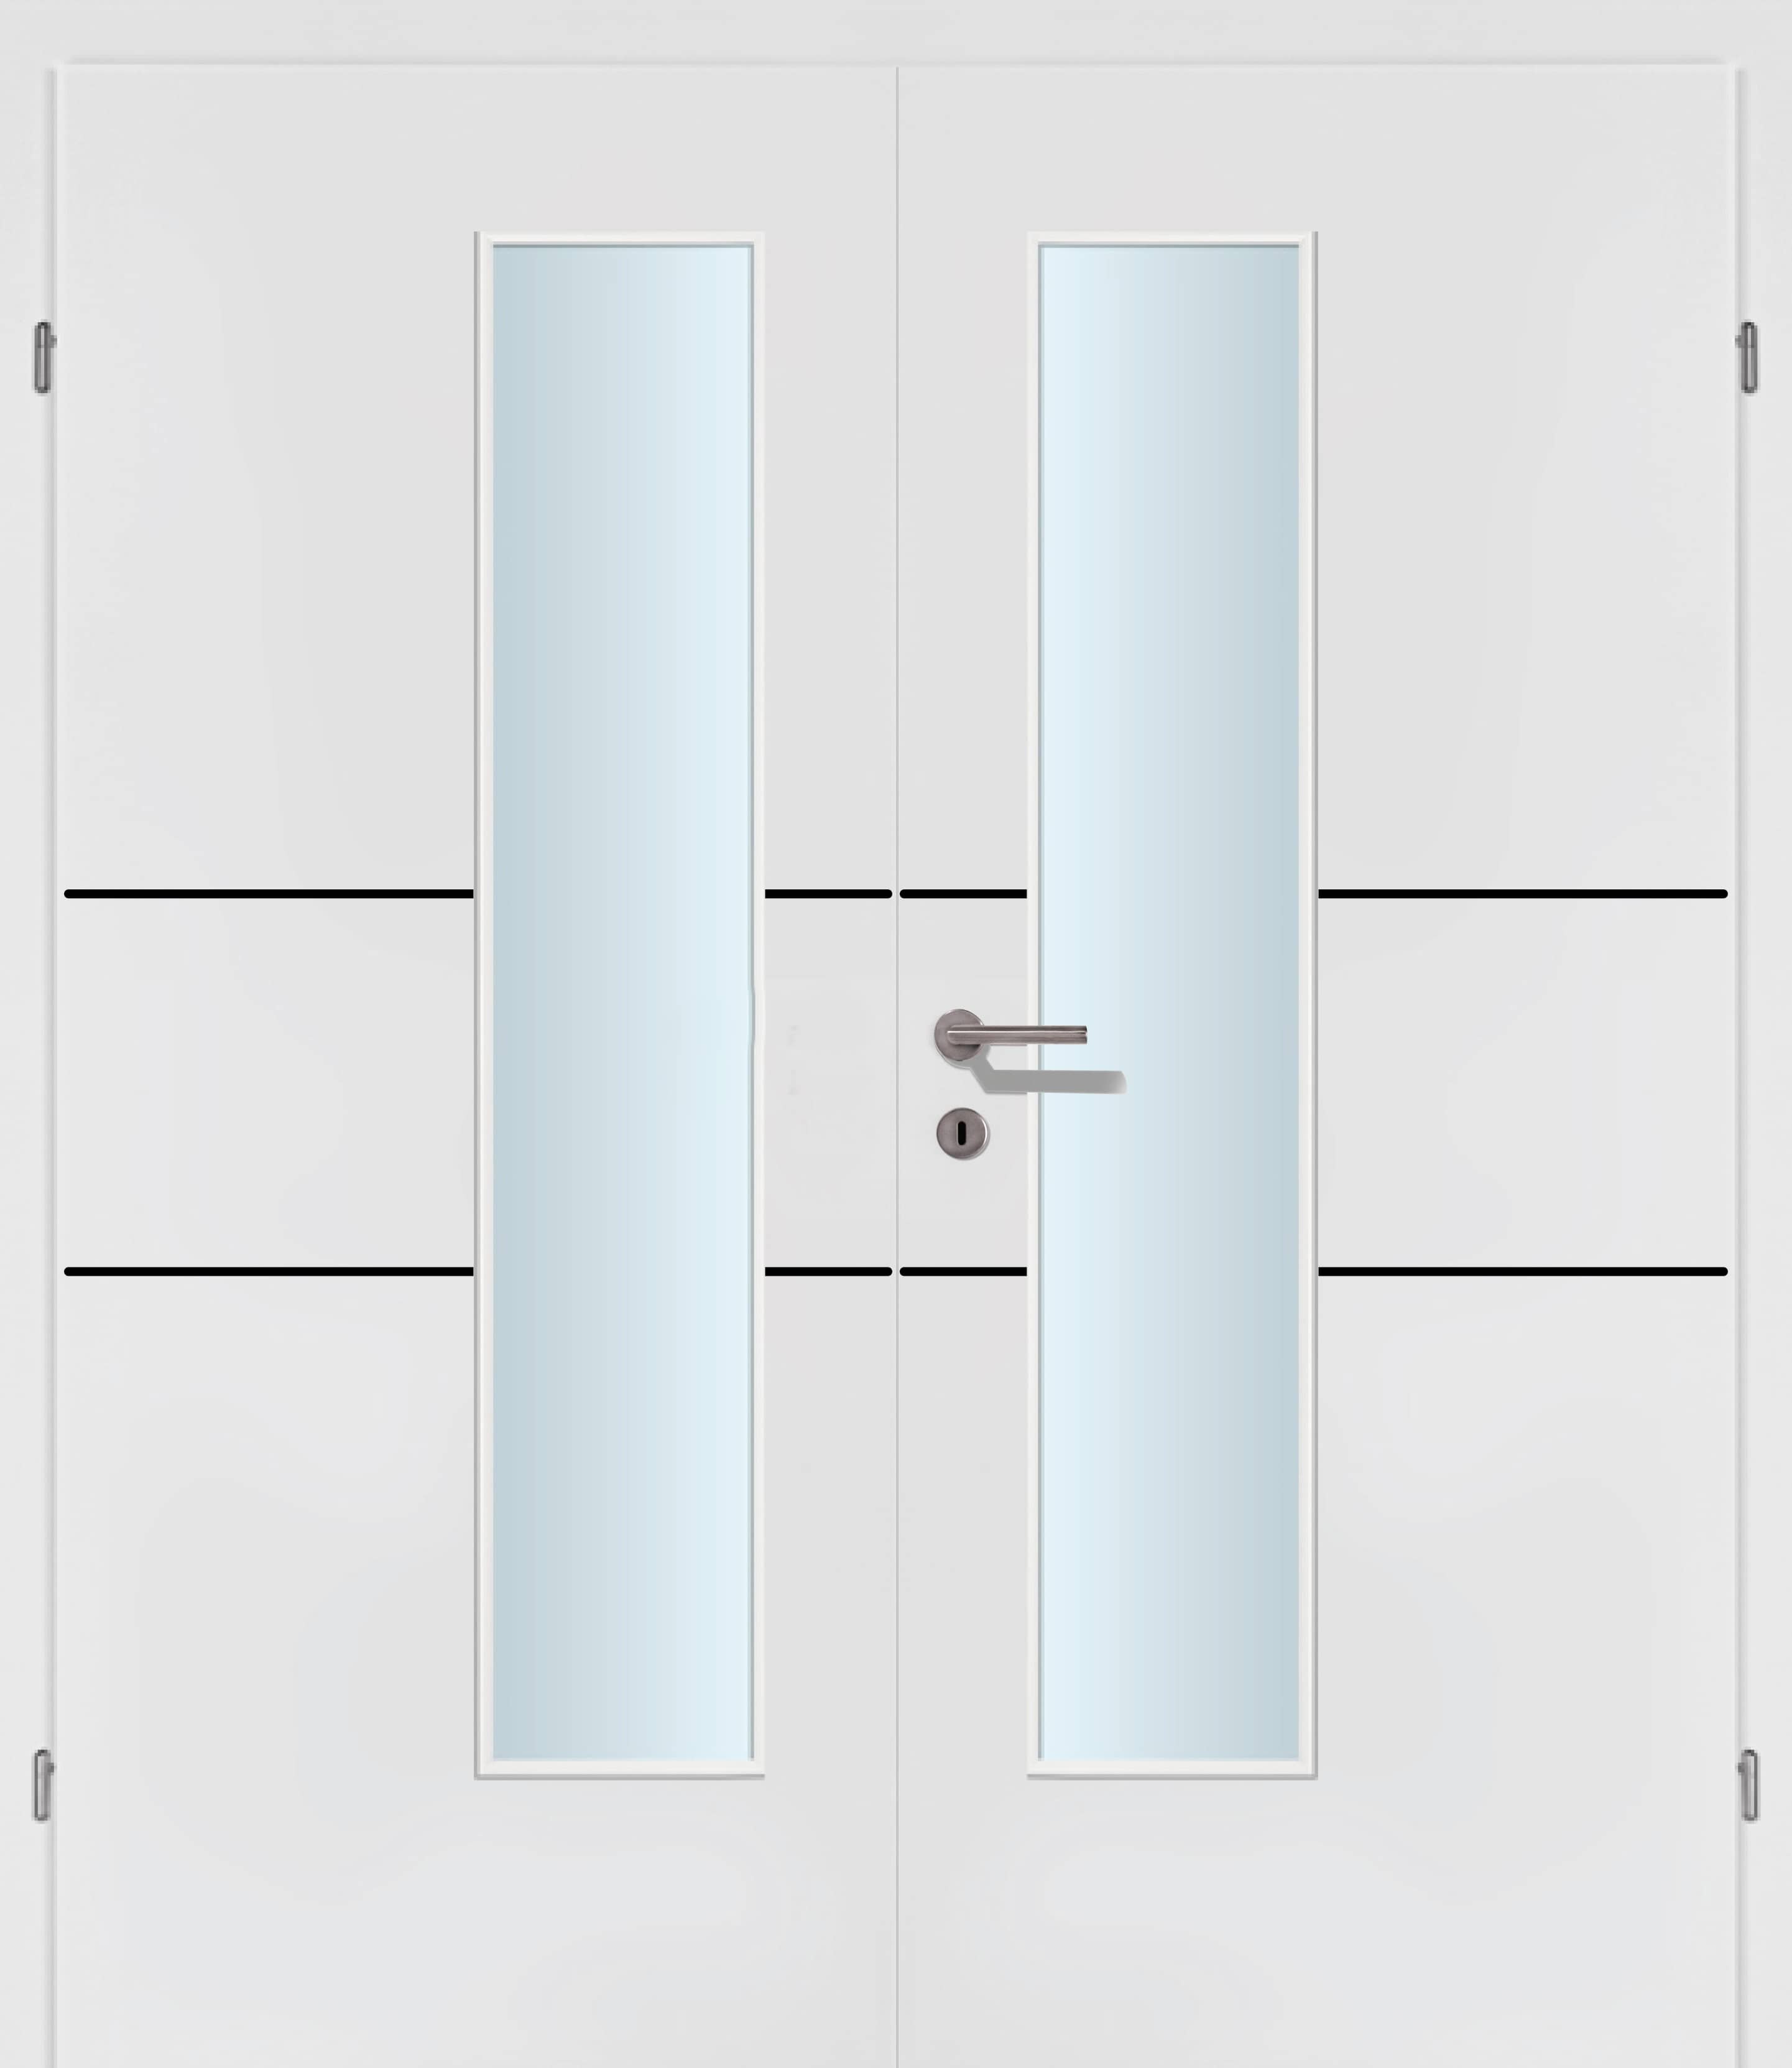 Selektion T42 Black Lisenen weiss Innentür Inkl. Zarge (Türrahmen) Doppeltüre Inkl. Glaslichte EN Drückerseitig